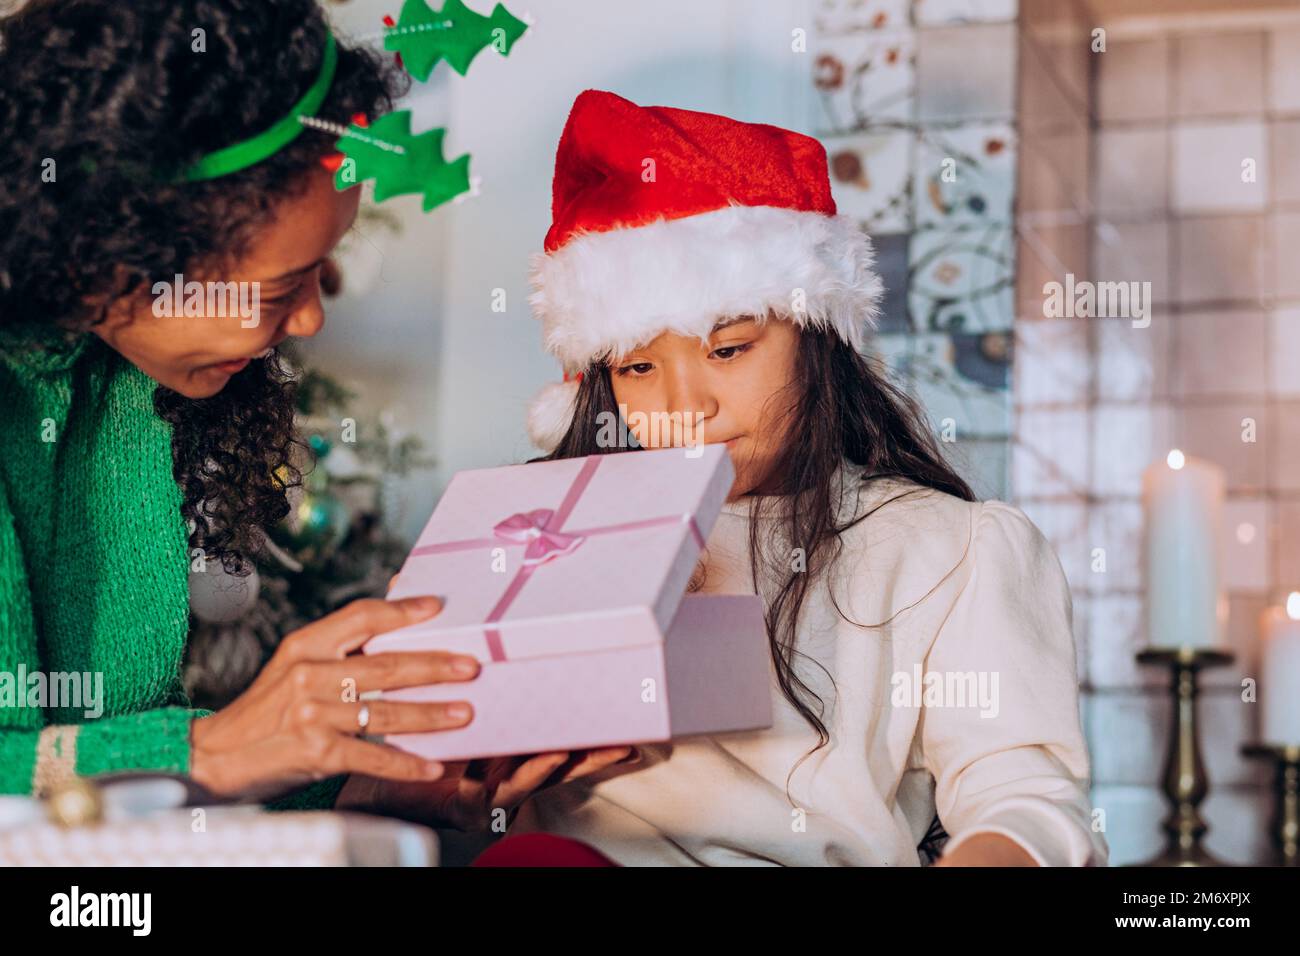 Morena hija de pelo largo en sombrero de Santa abre caja festiva con regalos sentados cerca de la mamá afroamericana contra el árbol de Navidad Foto de stock